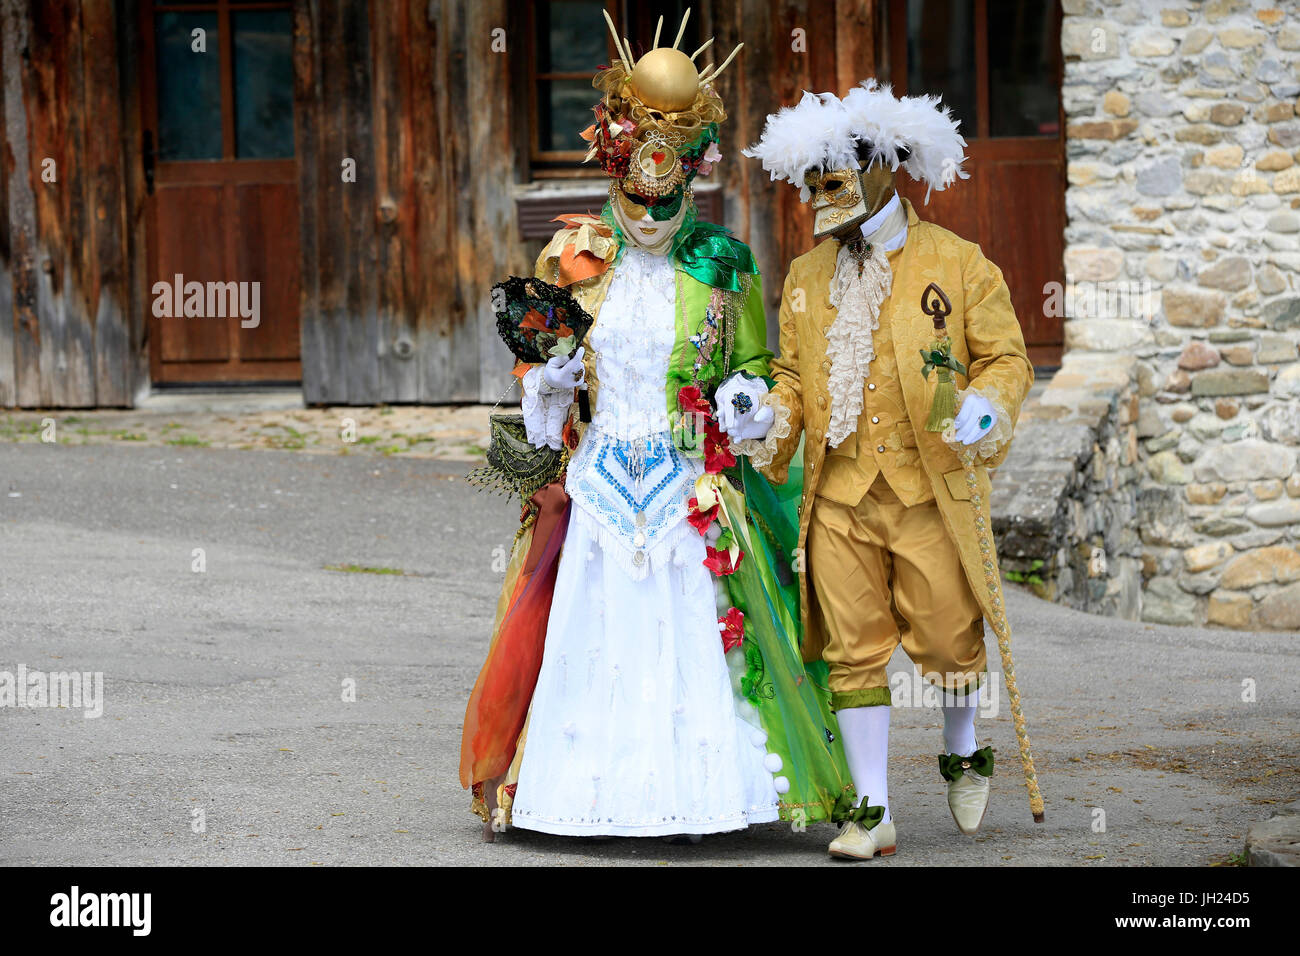 Yvoire, Les Plus Beaux Dörfer de France (die schönsten Dörfer Frankreichs) gekennzeichnet. Der venezianische Karneval.  Paar Verschleißteile Karnevalskostüm. Stockfoto